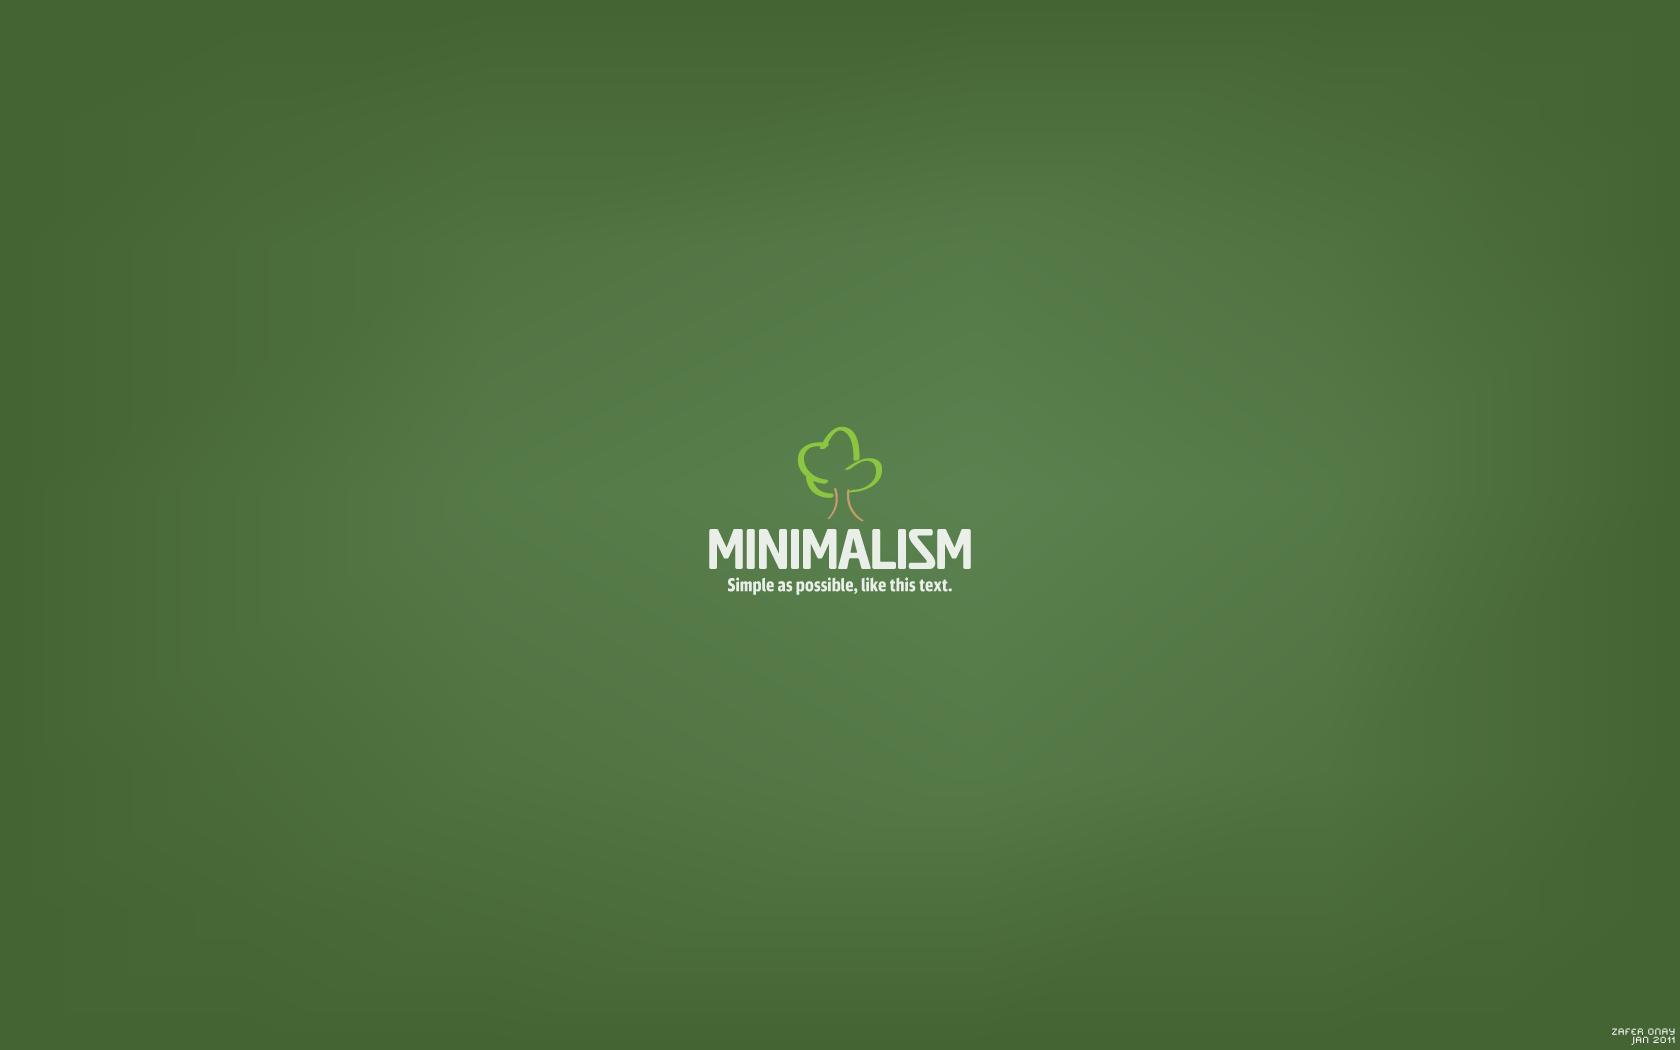 Minimalism wallpaper. Minimalism